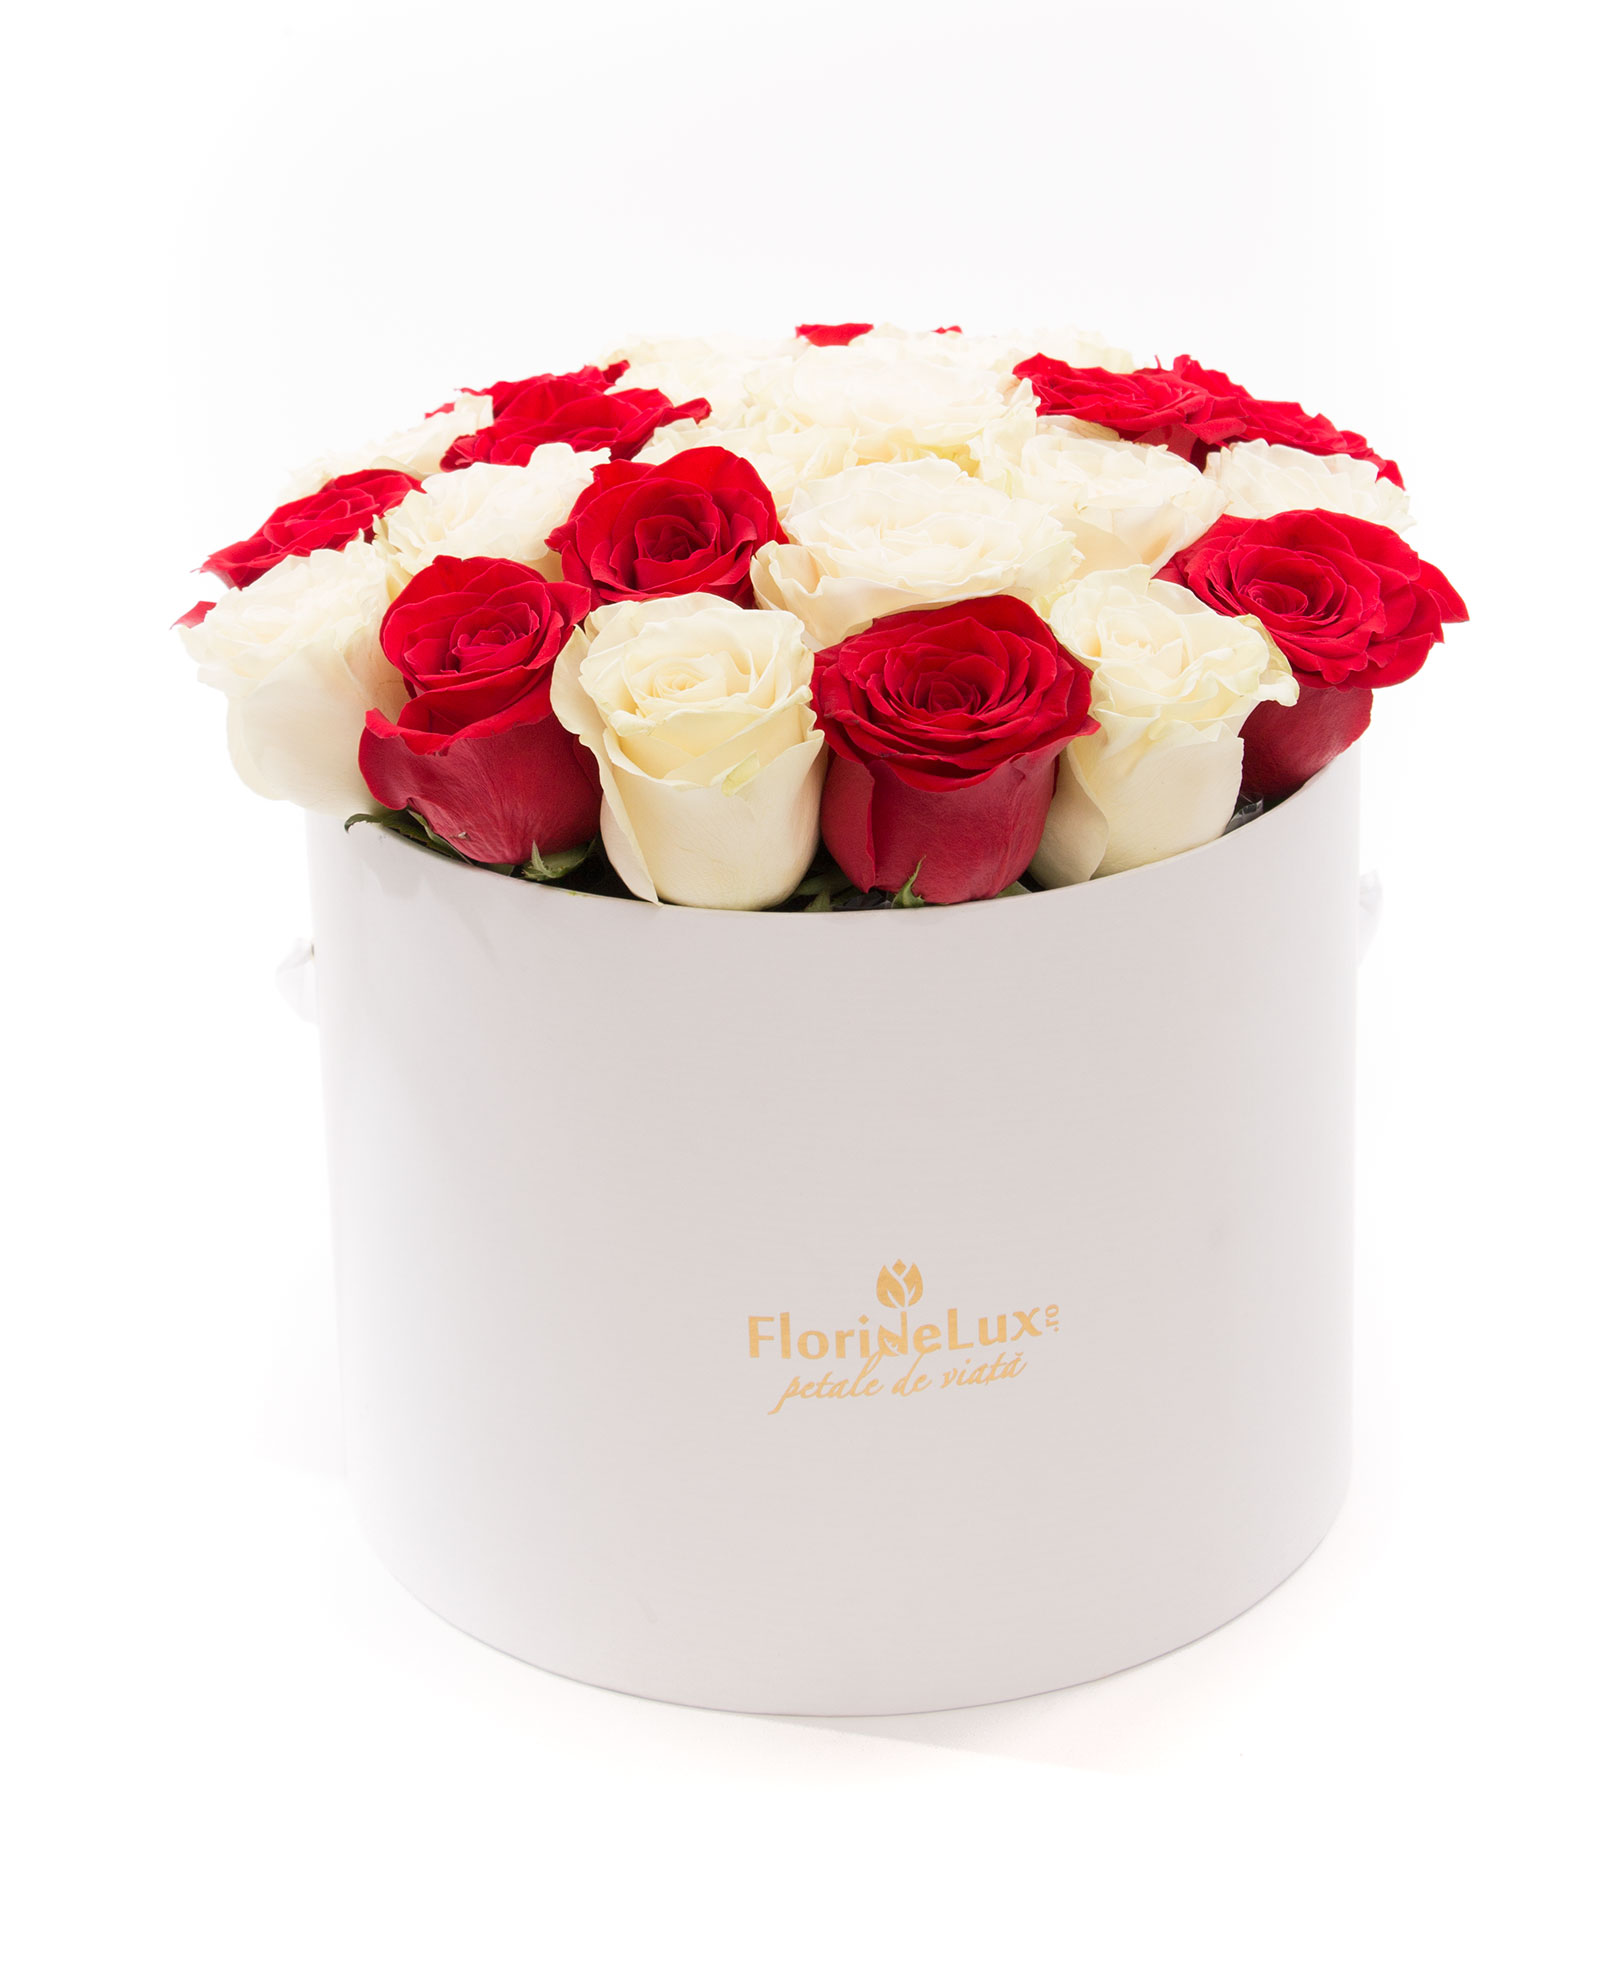 Cutie cu 23 trandafiri albi, rosii si Corton Charlemagne